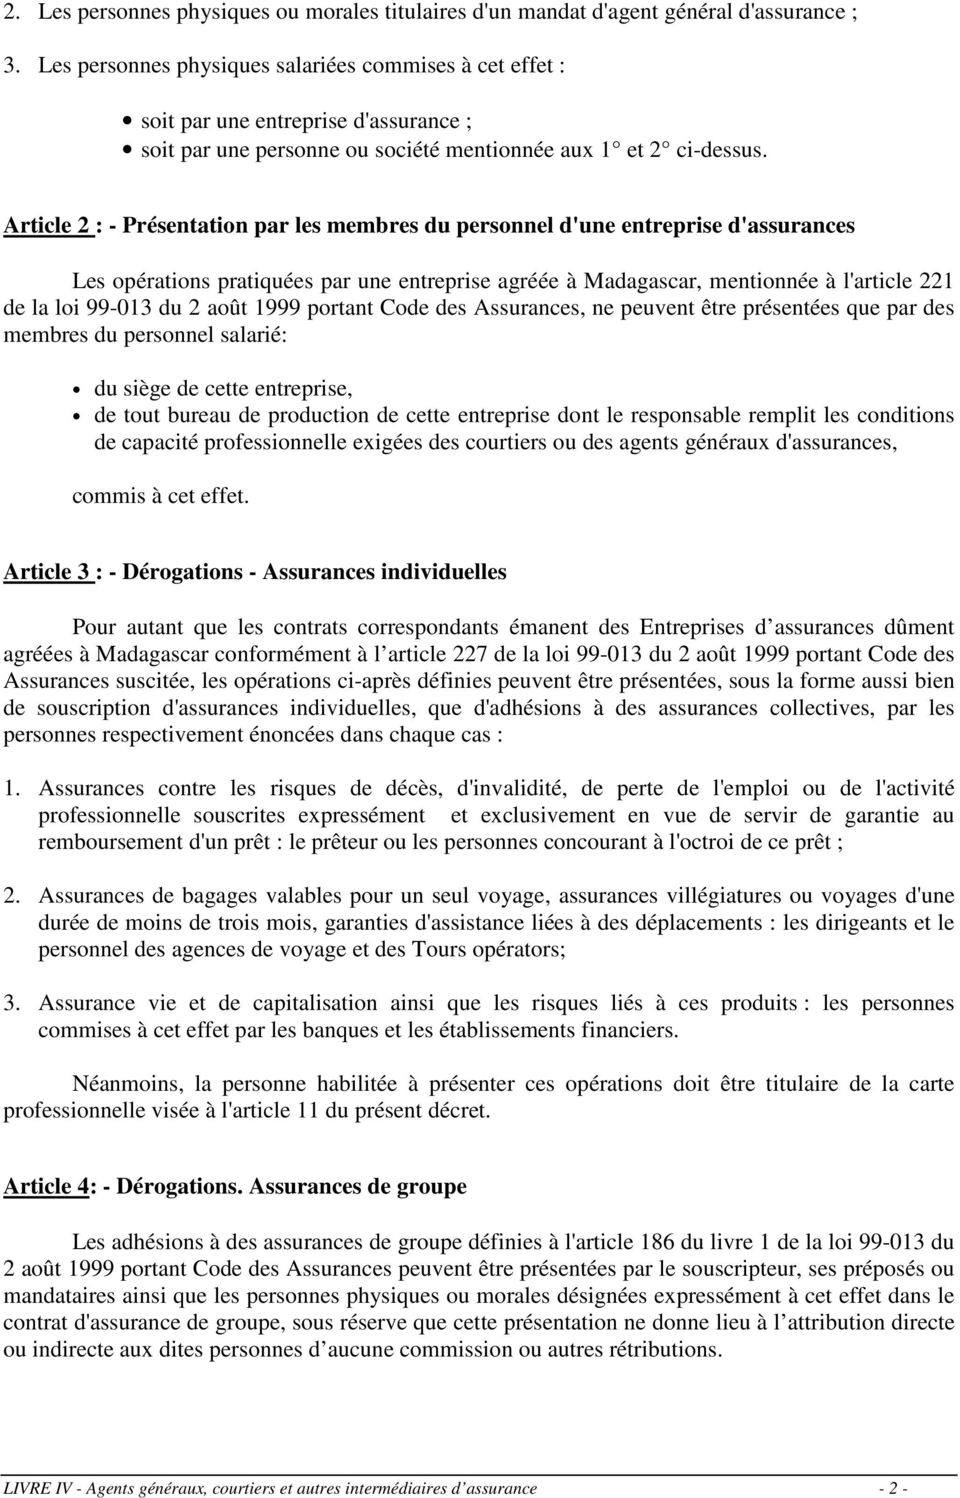 Article 2 : - Présentation par les membres du personnel d'une entreprise d'assurances Les opérations pratiquées par une entreprise agréée à Madagascar, mentionnée à l'article 221 de la loi 99-013 du